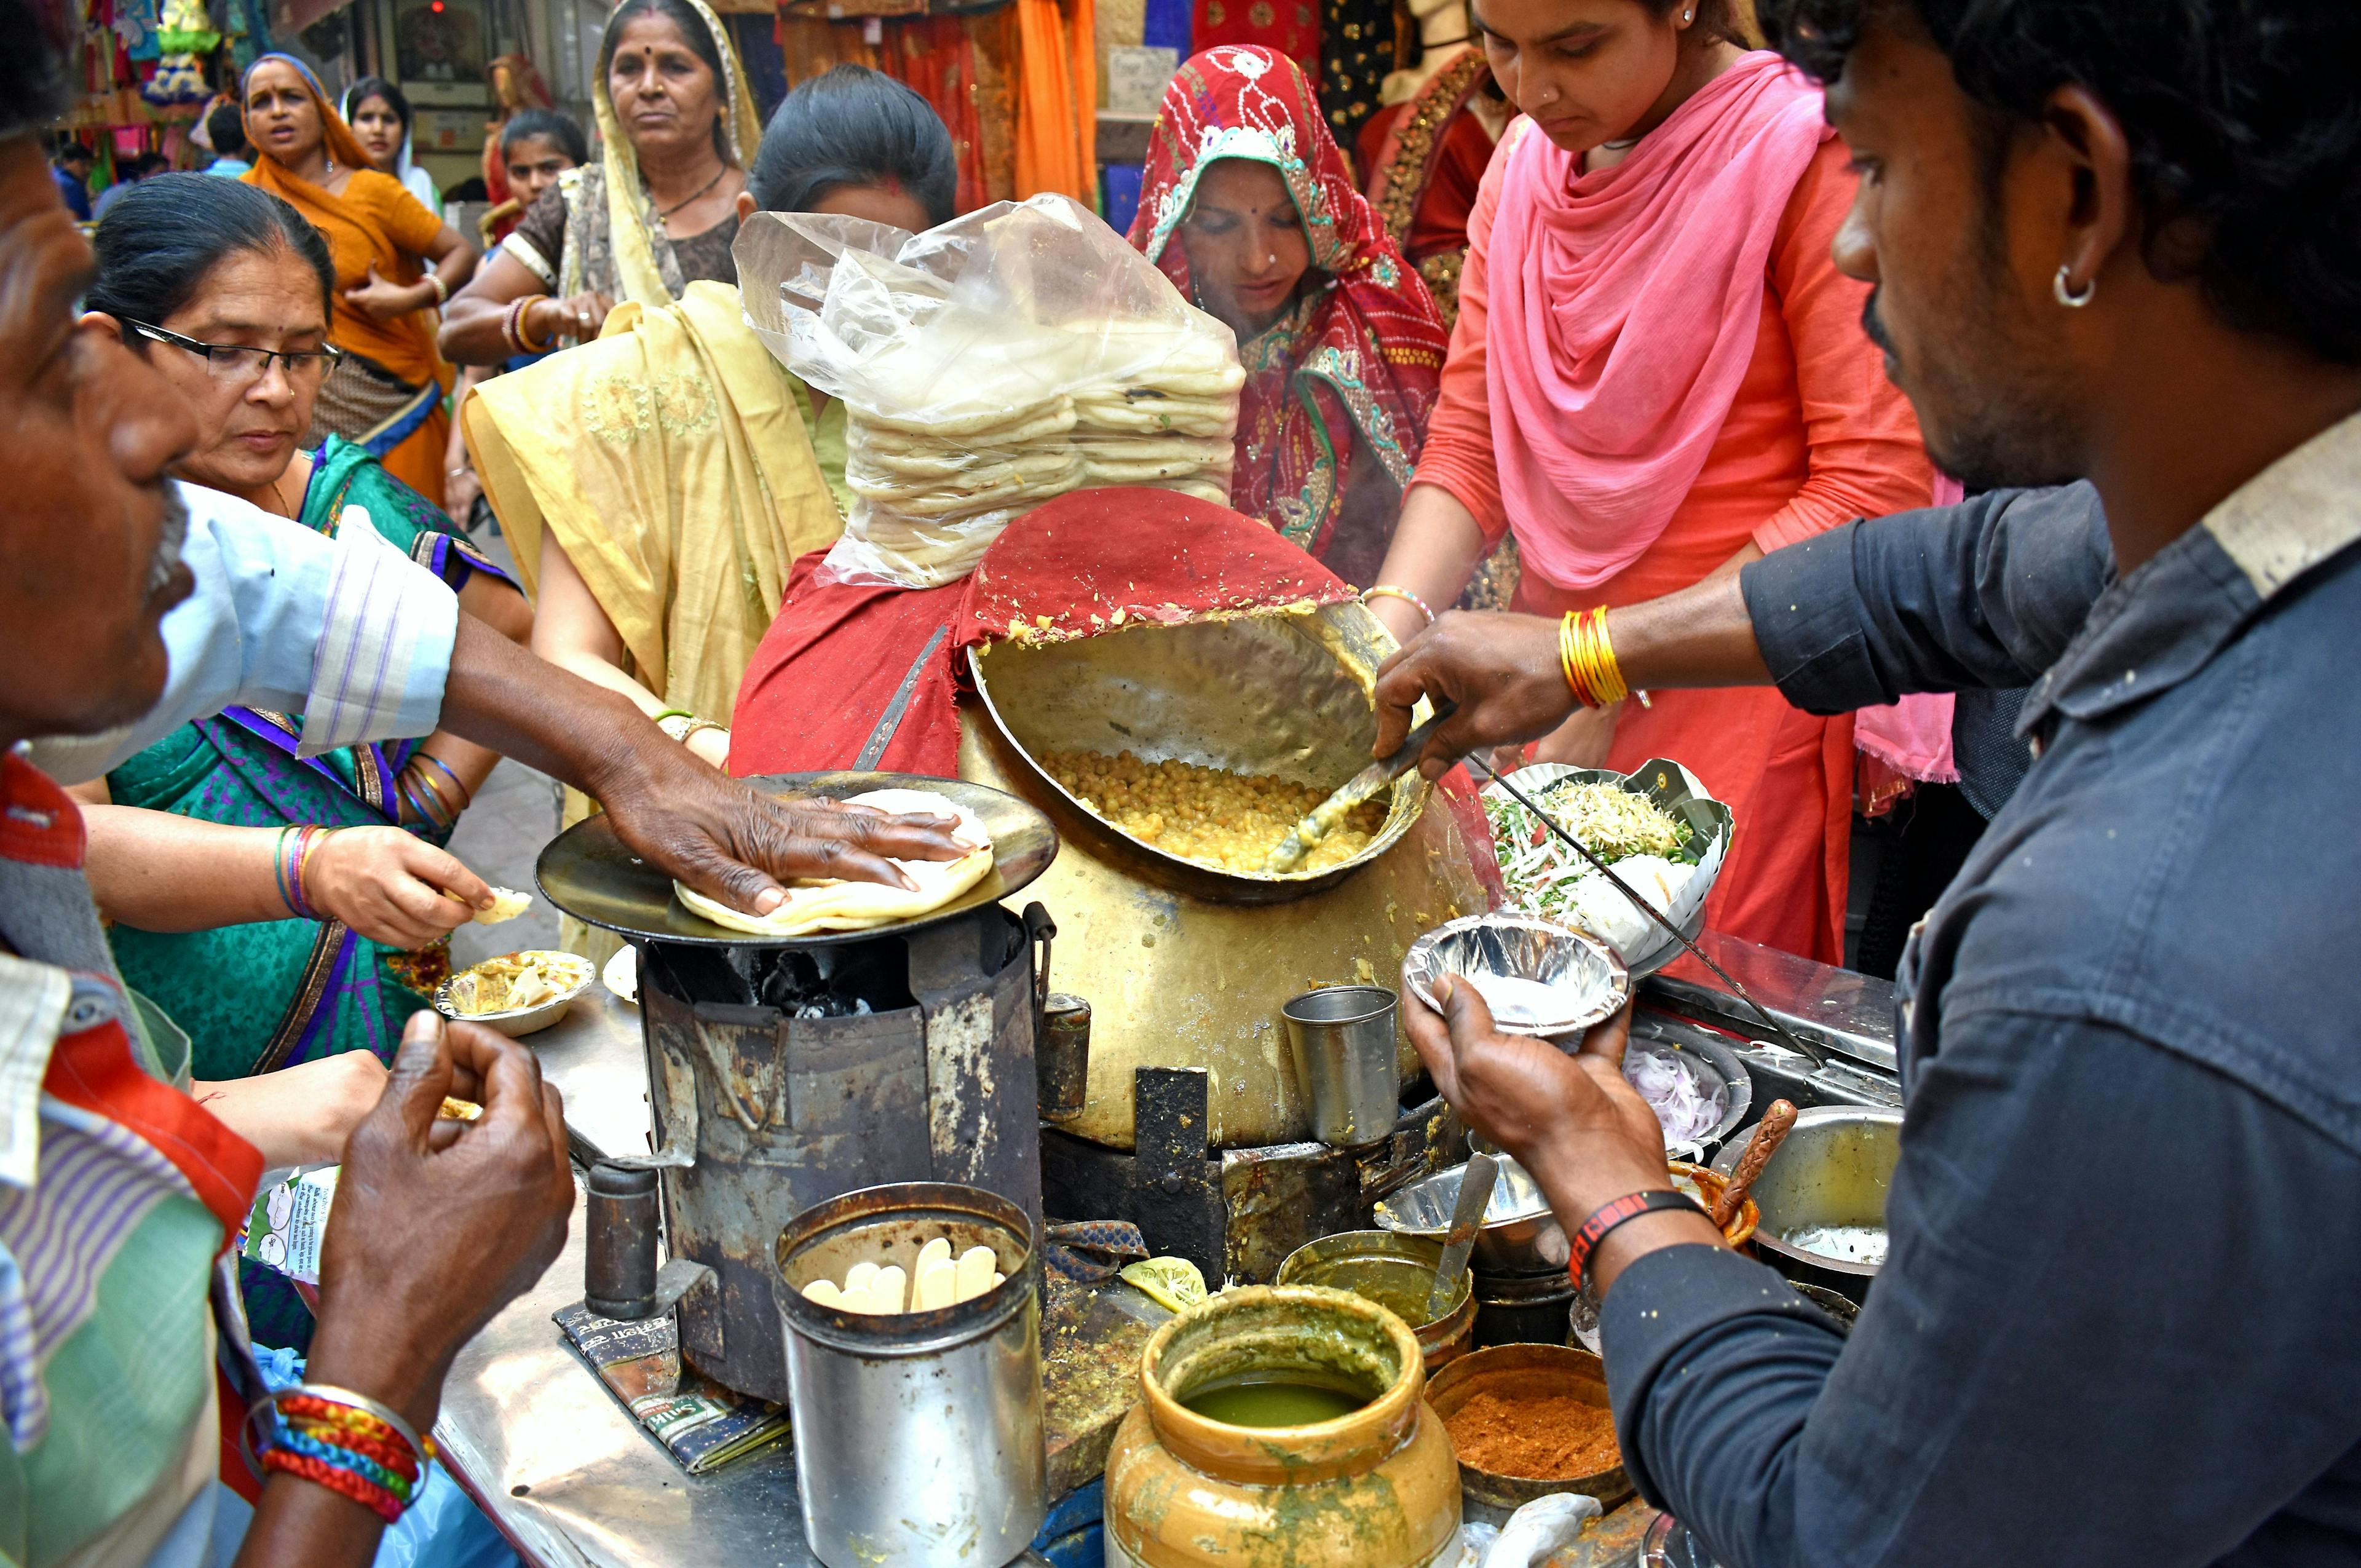 Street food in Chandni Chowk, New Delhi, Delhi, India